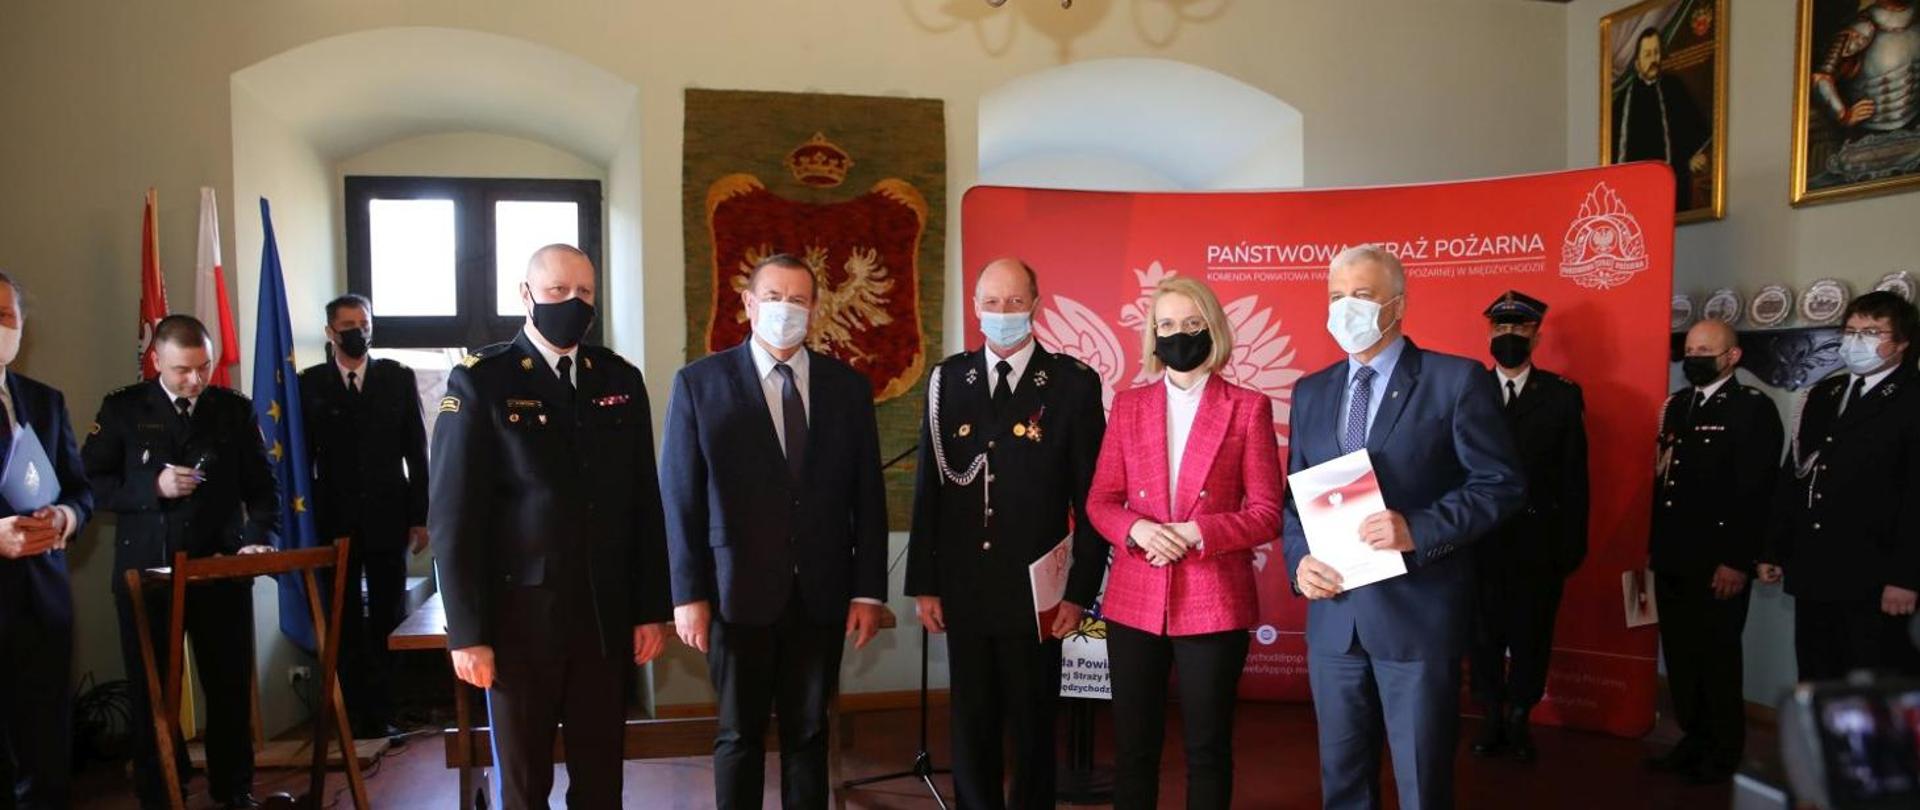 Na zdjęciu widzimy Parlamentarzystów wraz z Wielkopolskim Komendantem Wojewódzkim podczas przekazania promesy na zakup pojazdu pożarniczego. 